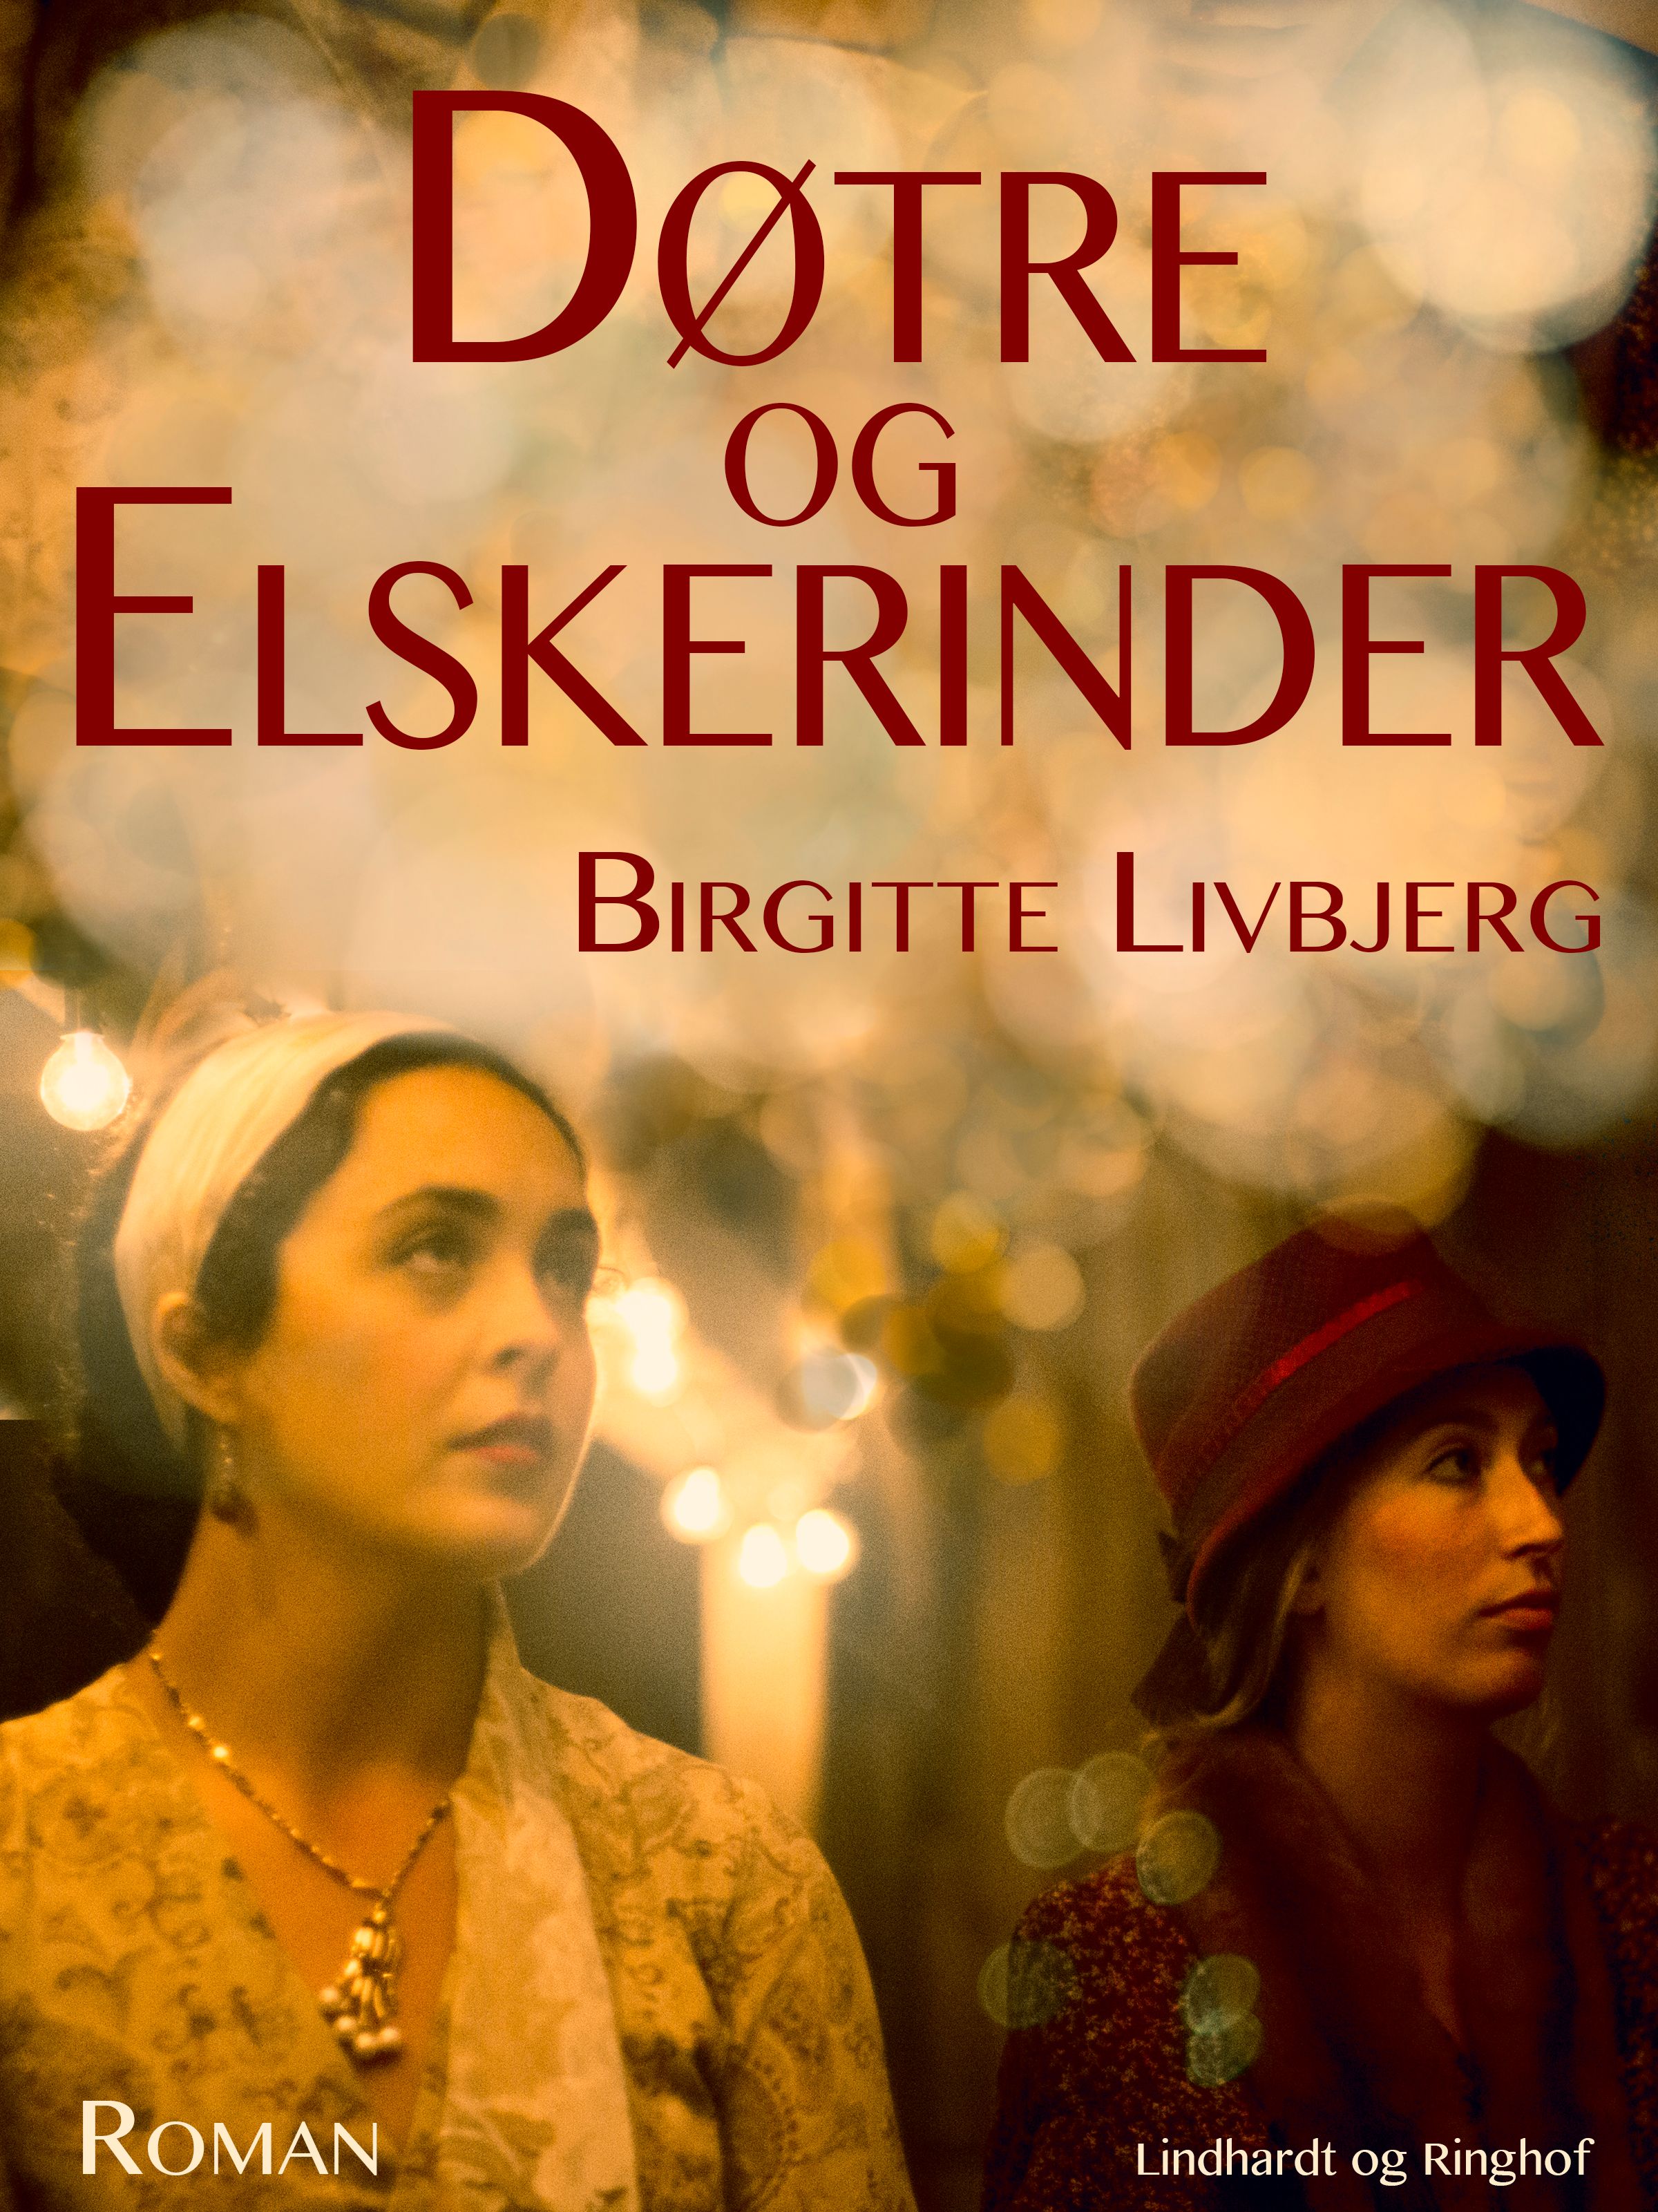 Døtre og elskerinder, lydbog af Birgitte Livbjerg